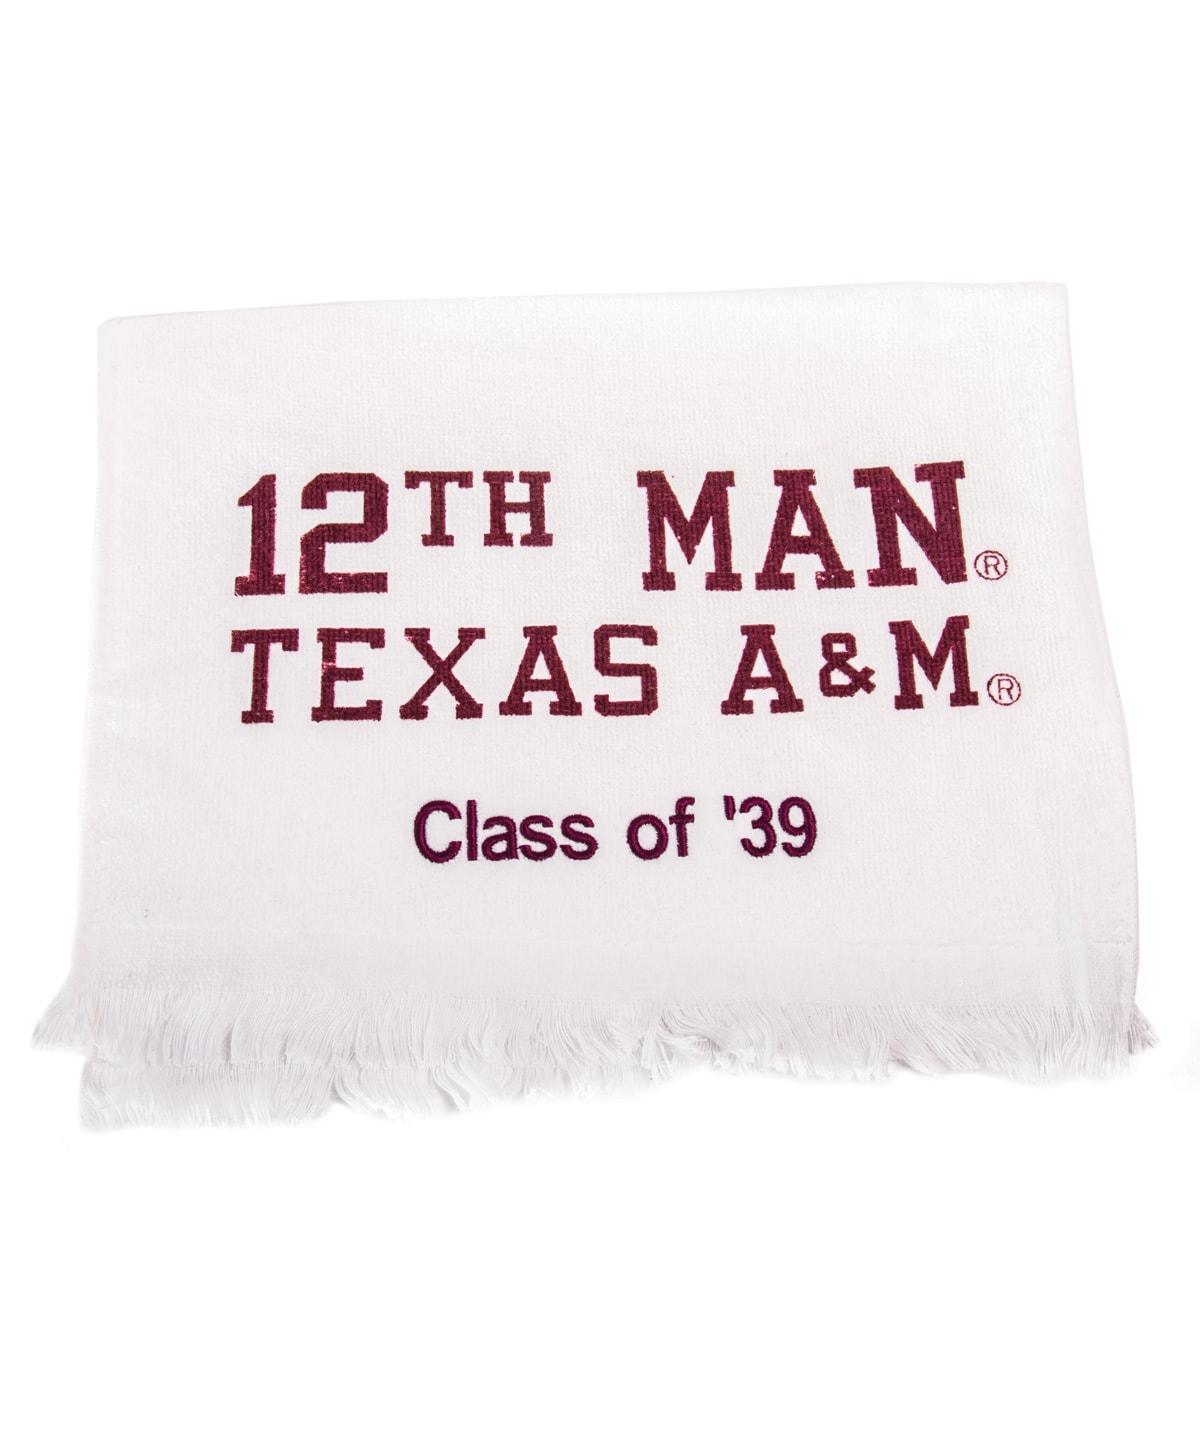 Texas A&M Aggie 12th Man Towel